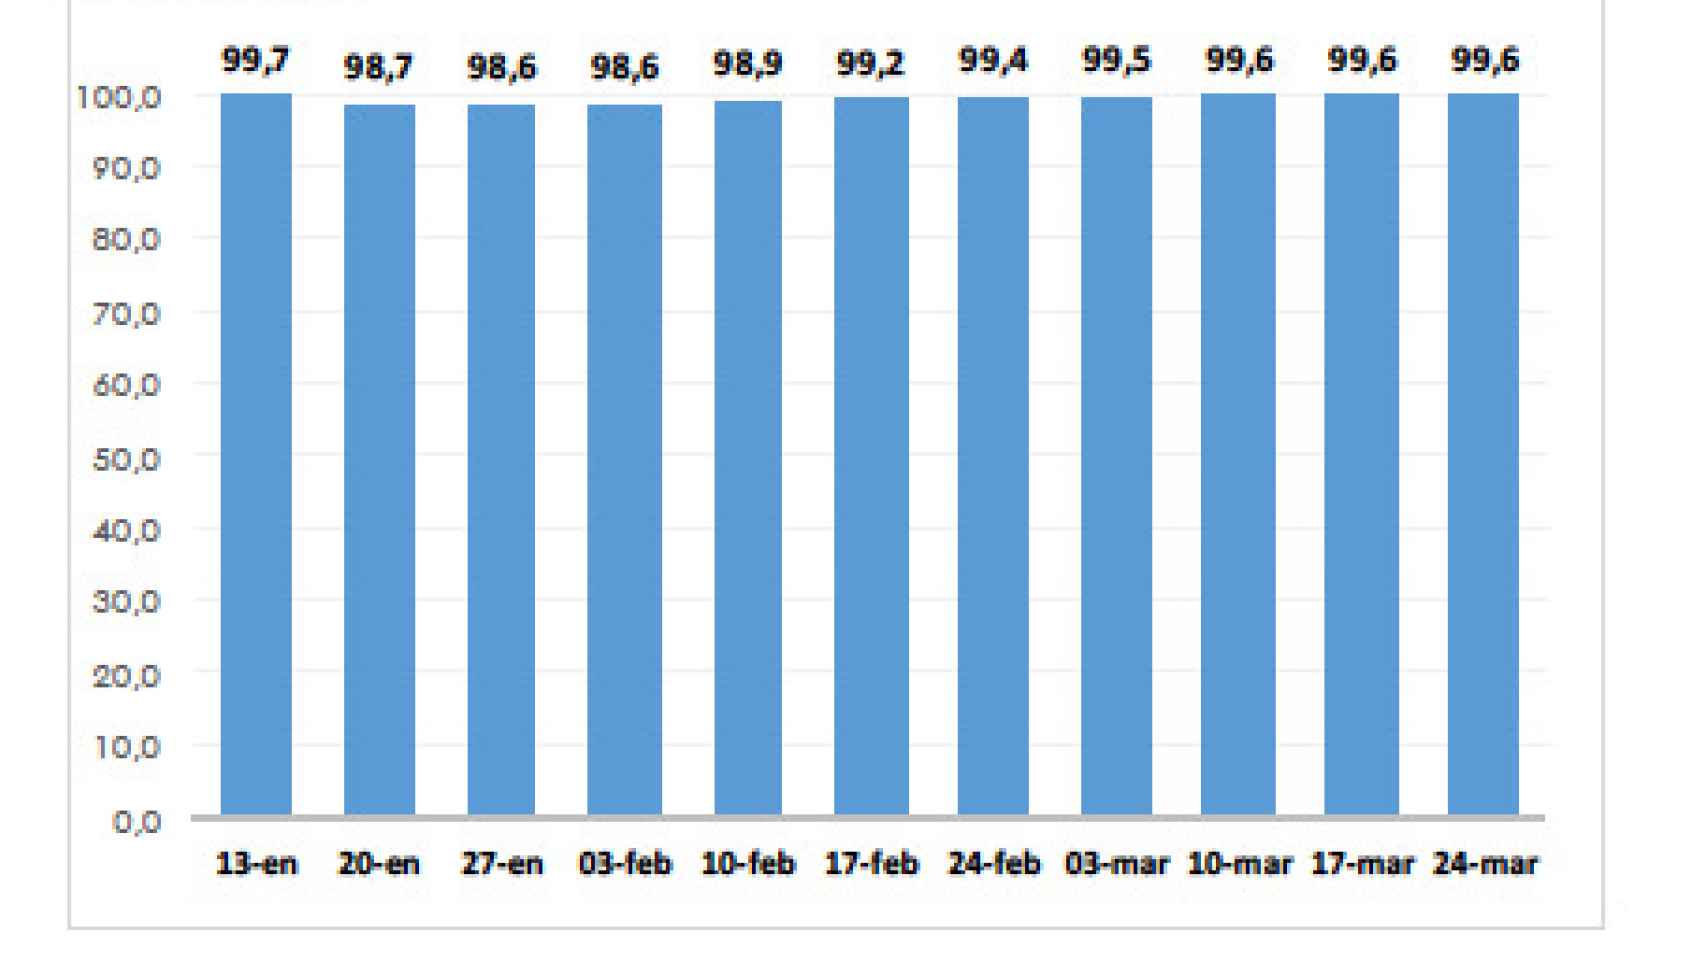 Gráfico con el porcentaje de aulas abiertas la última semana de marzo según el Ministerio de Educación y Formación Profesional.